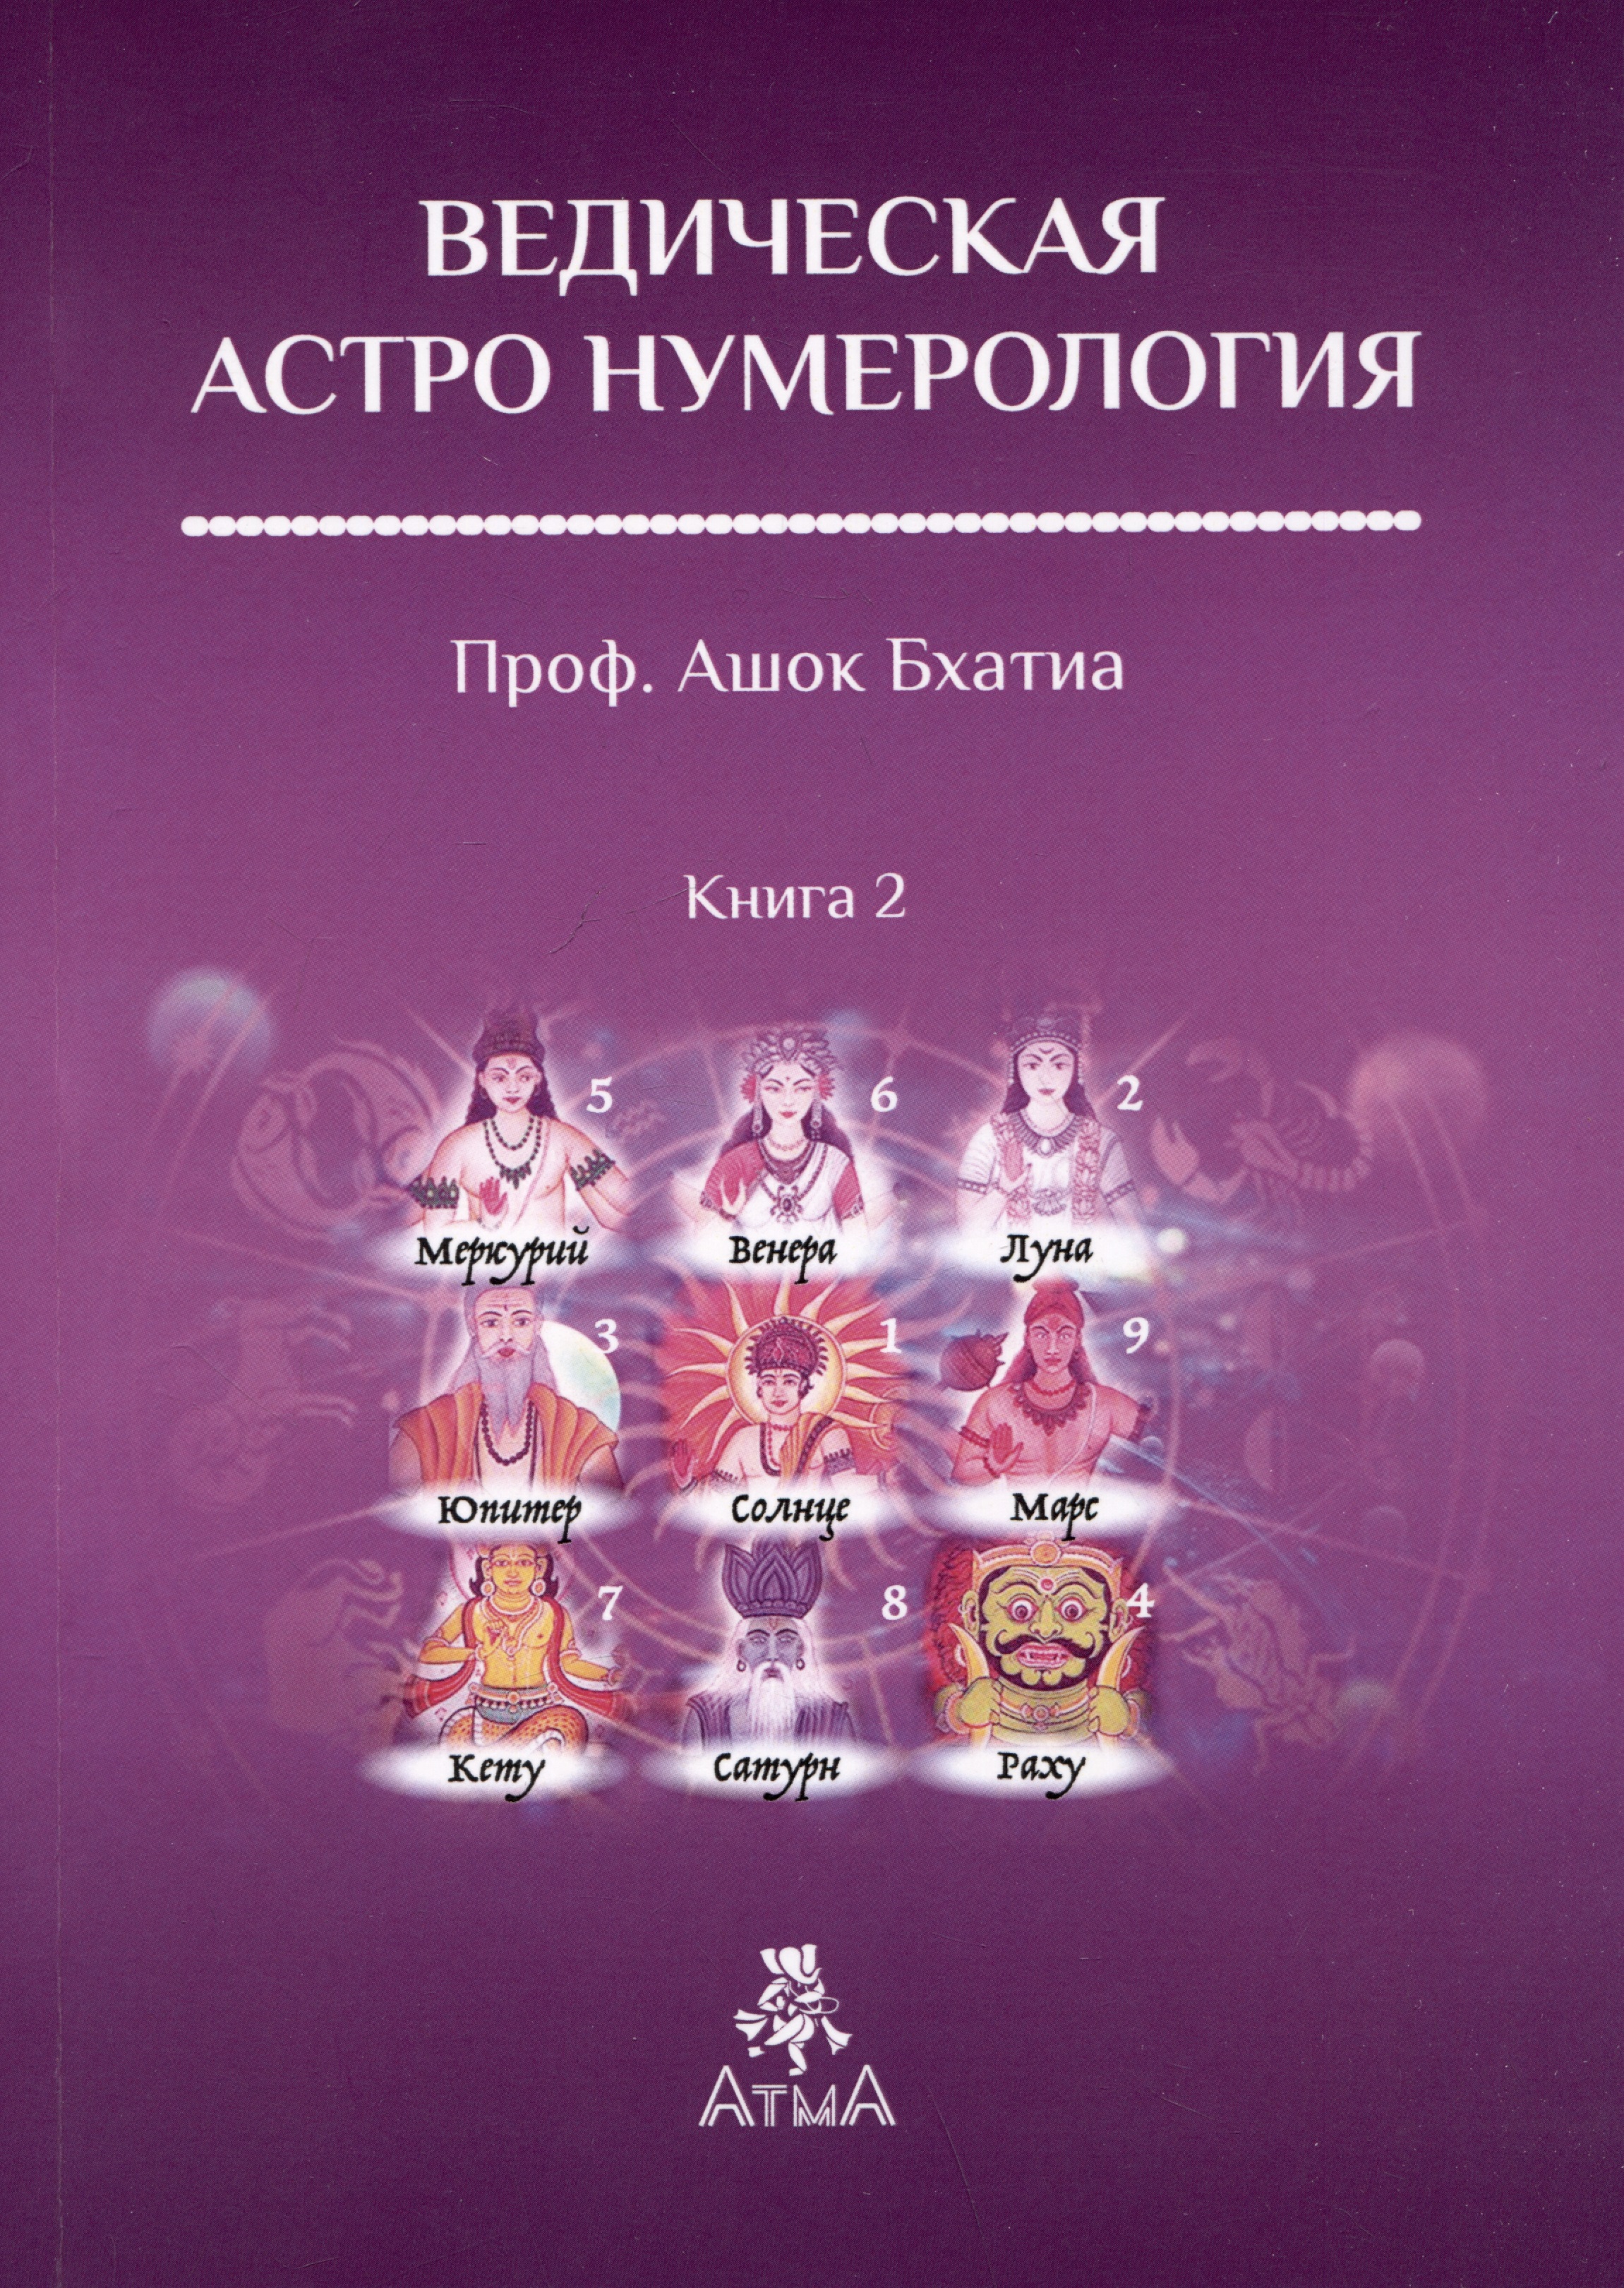 бхатия а ведическая астро нумерология книга 2 Ведическая Астро Нумерология. Книга 2